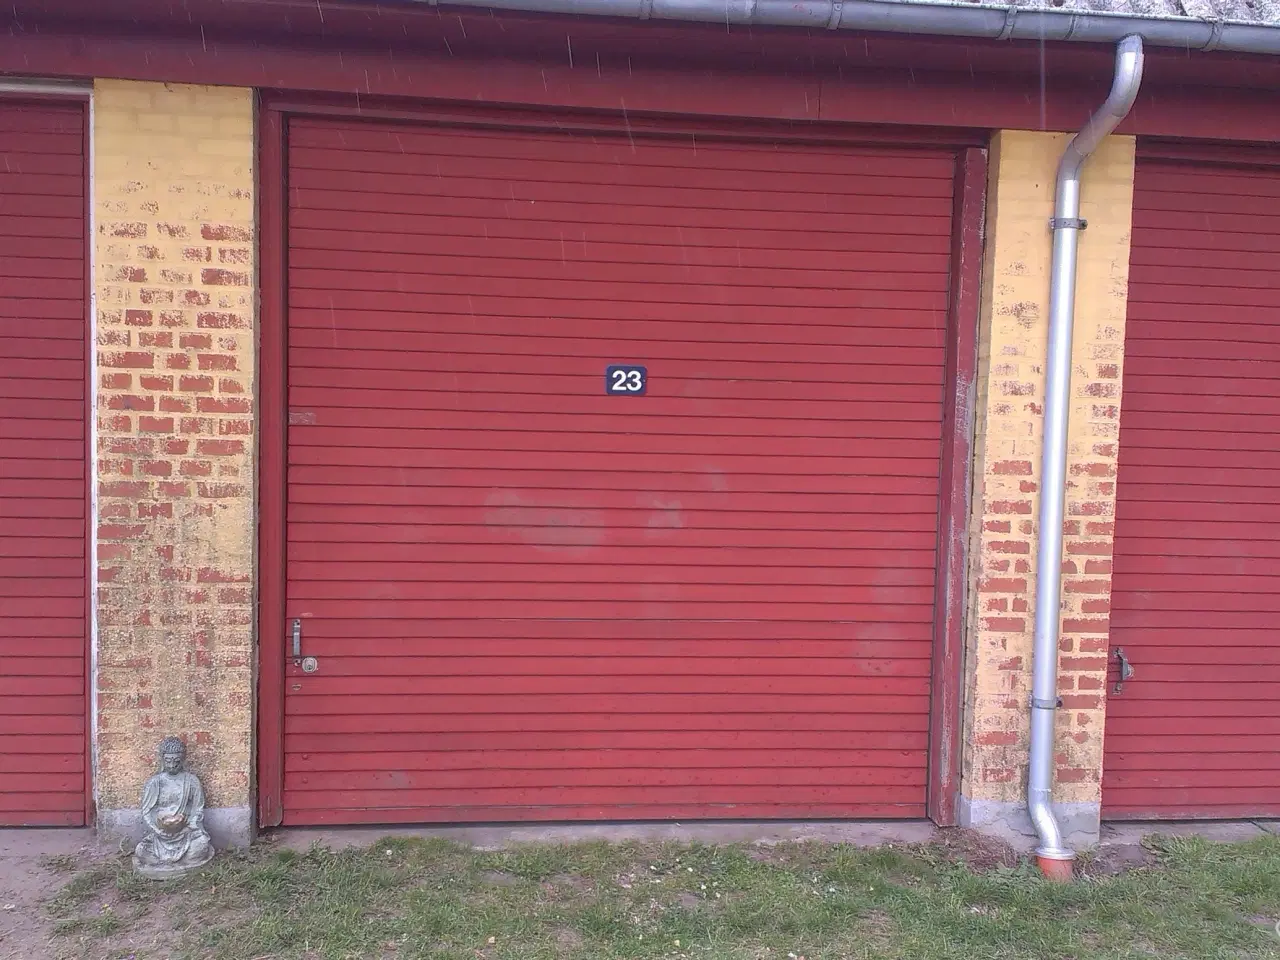 Billede 4 - Garage / lager  til leje i Ørsted på 21 m²